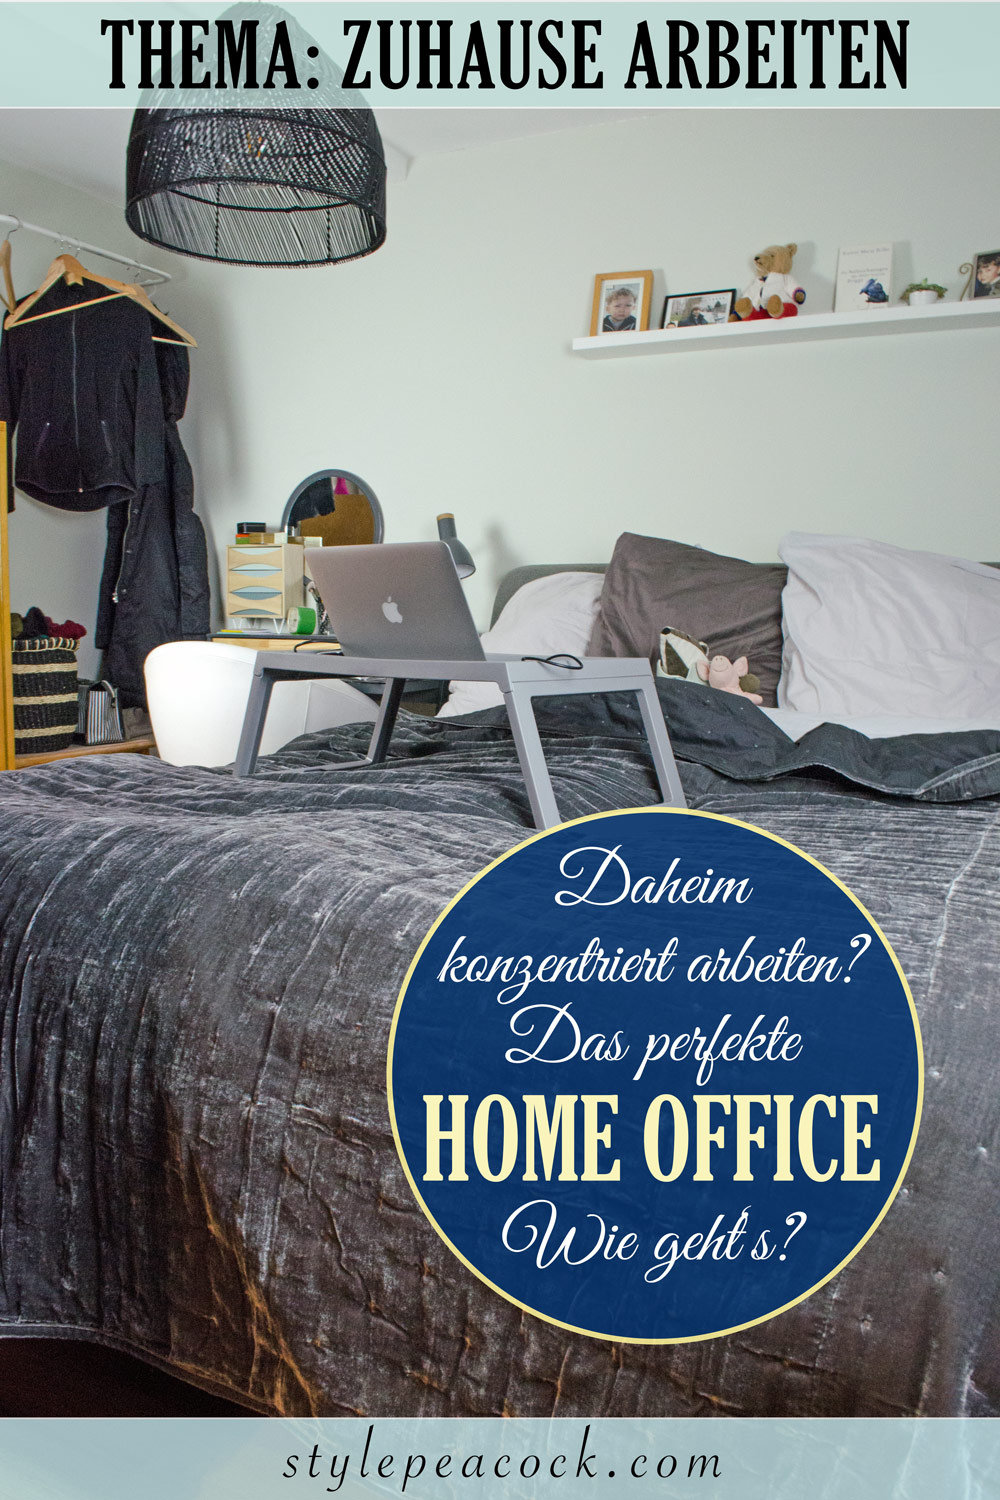 [unbezahlte werbung] Home Office | Zuhause arbeiten: Dein perfektes Büro & Arbeitsplatz daheim